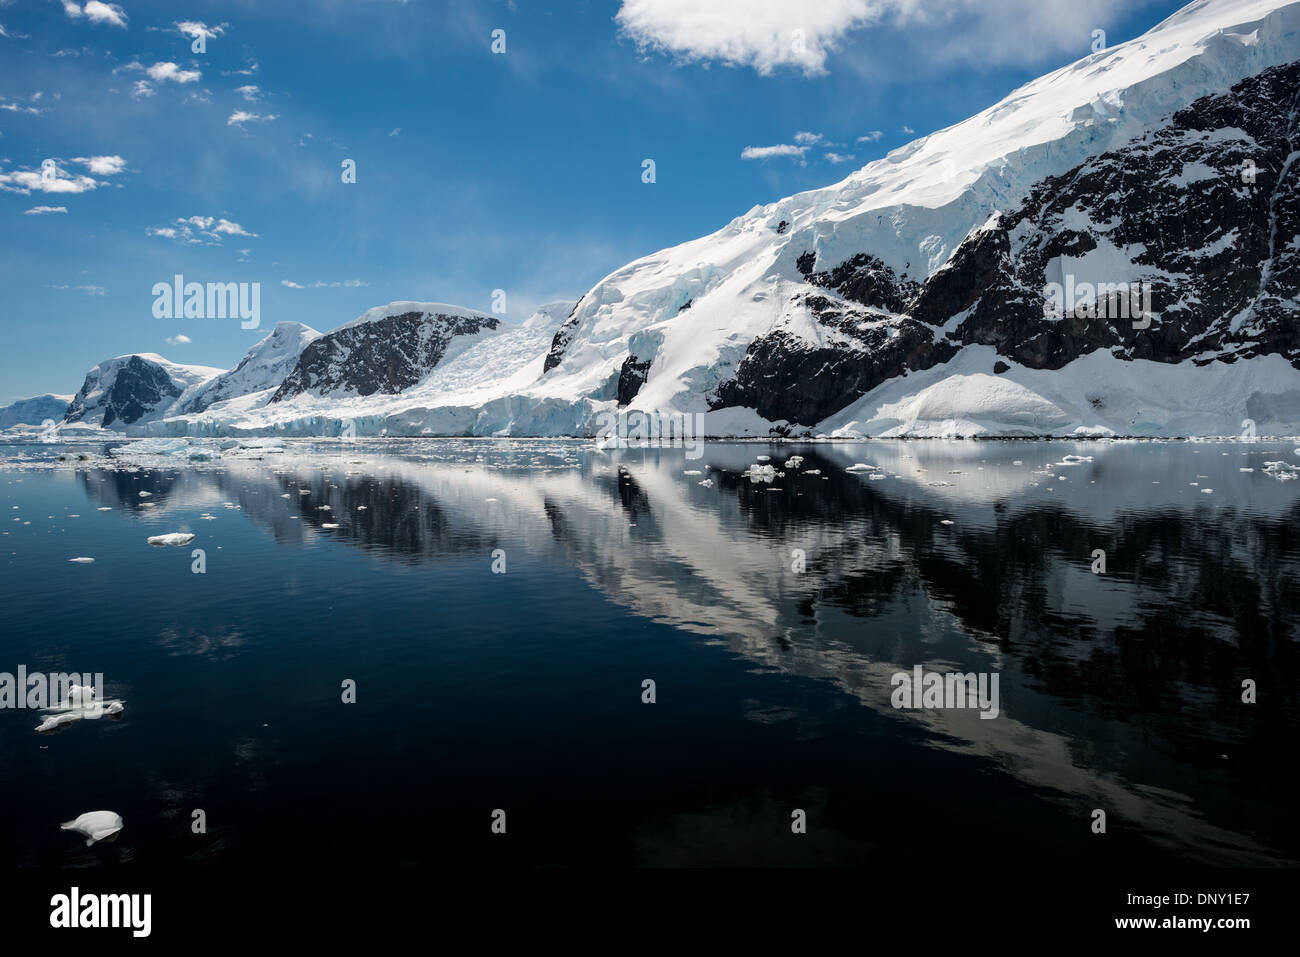 Antarktis - Das eisige und felsigen Landschaft Berge in Eis und Schnee bei Neko Harbour auf der Antarktischen Halbinsel abgedeckt ist auf Glasigen Spiegel reflektiert - wie ruhiges Wasser. Stockfoto